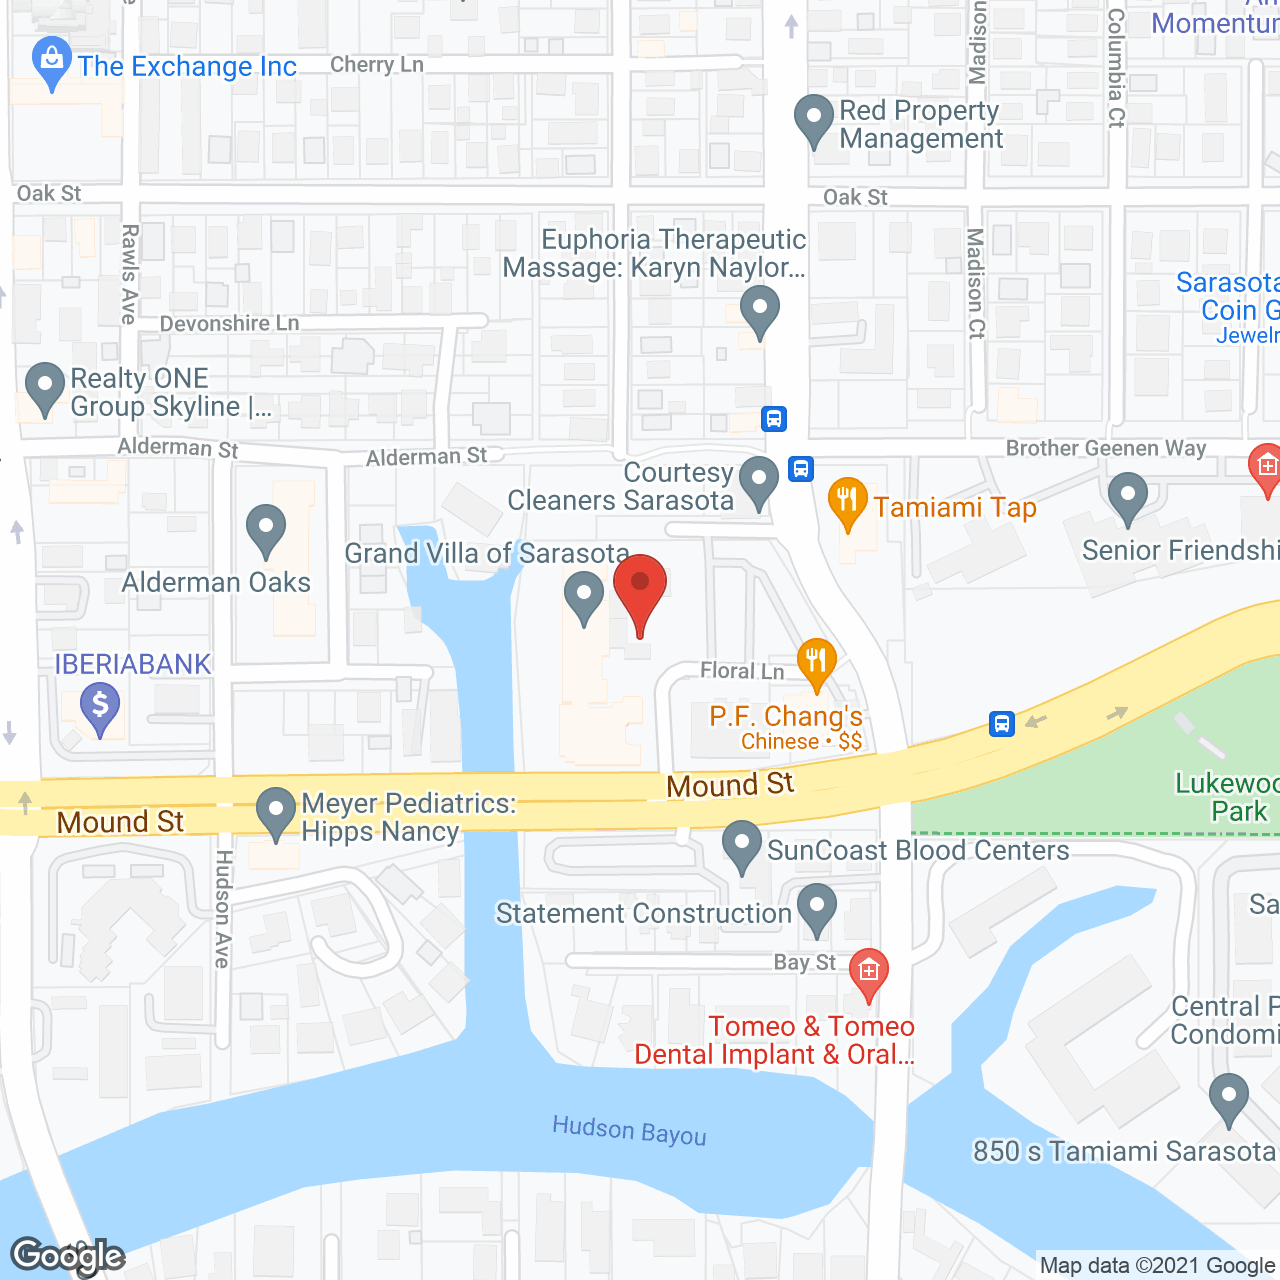 Grand Villa of Sarasota in google map